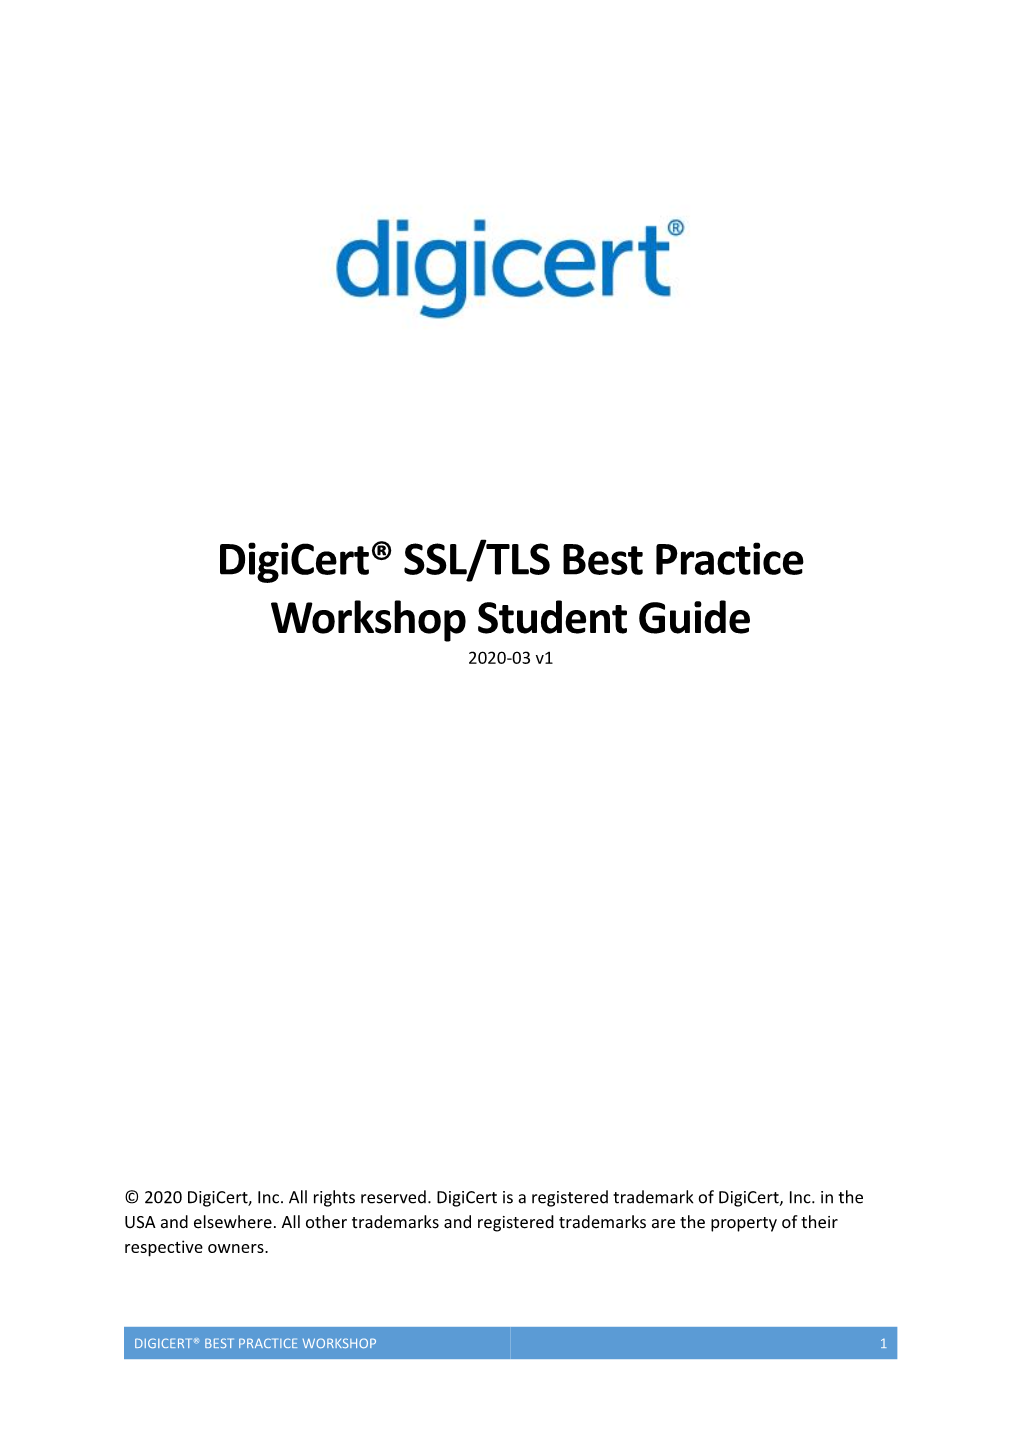 Digicert® Best Practice Workshop 1